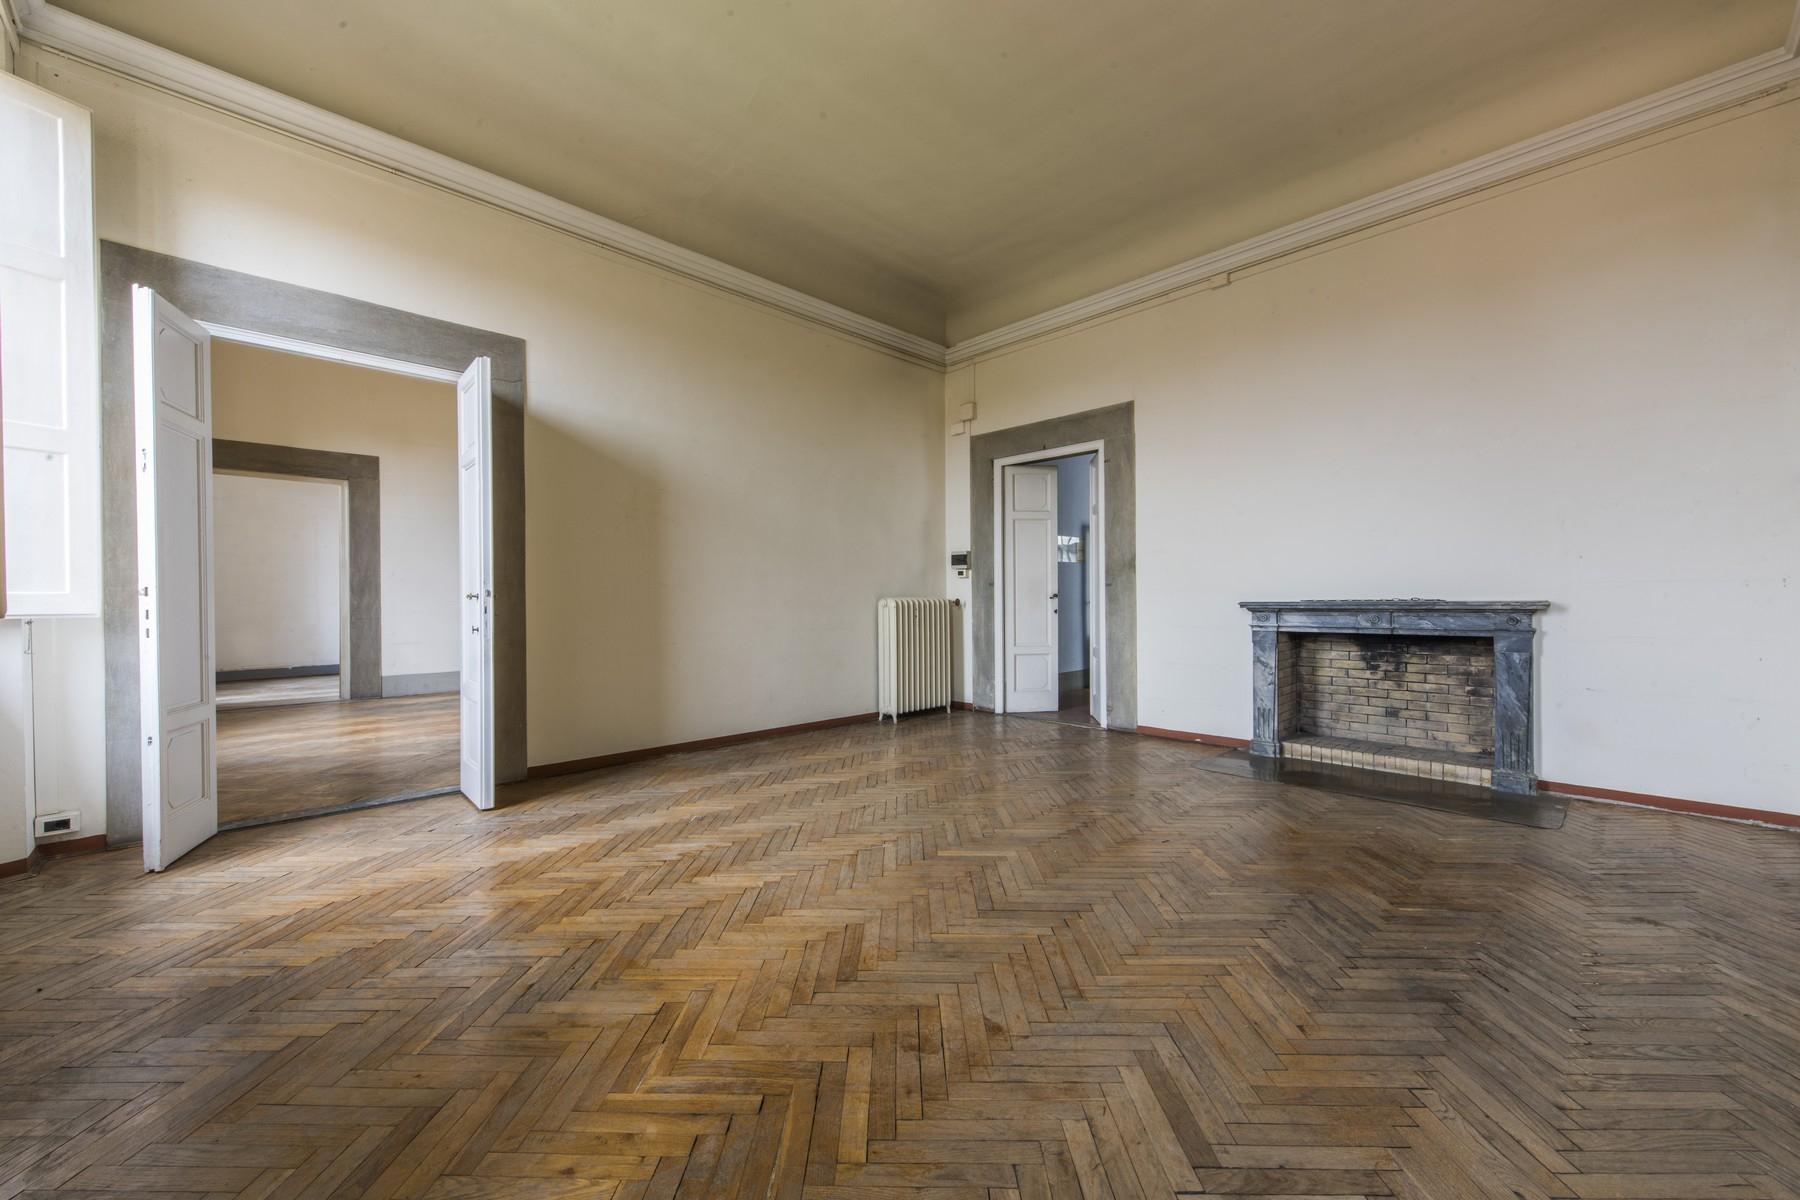 Великолепный пентхаус площадью 520 кв.м в историческом флорентийском палаццо - 5